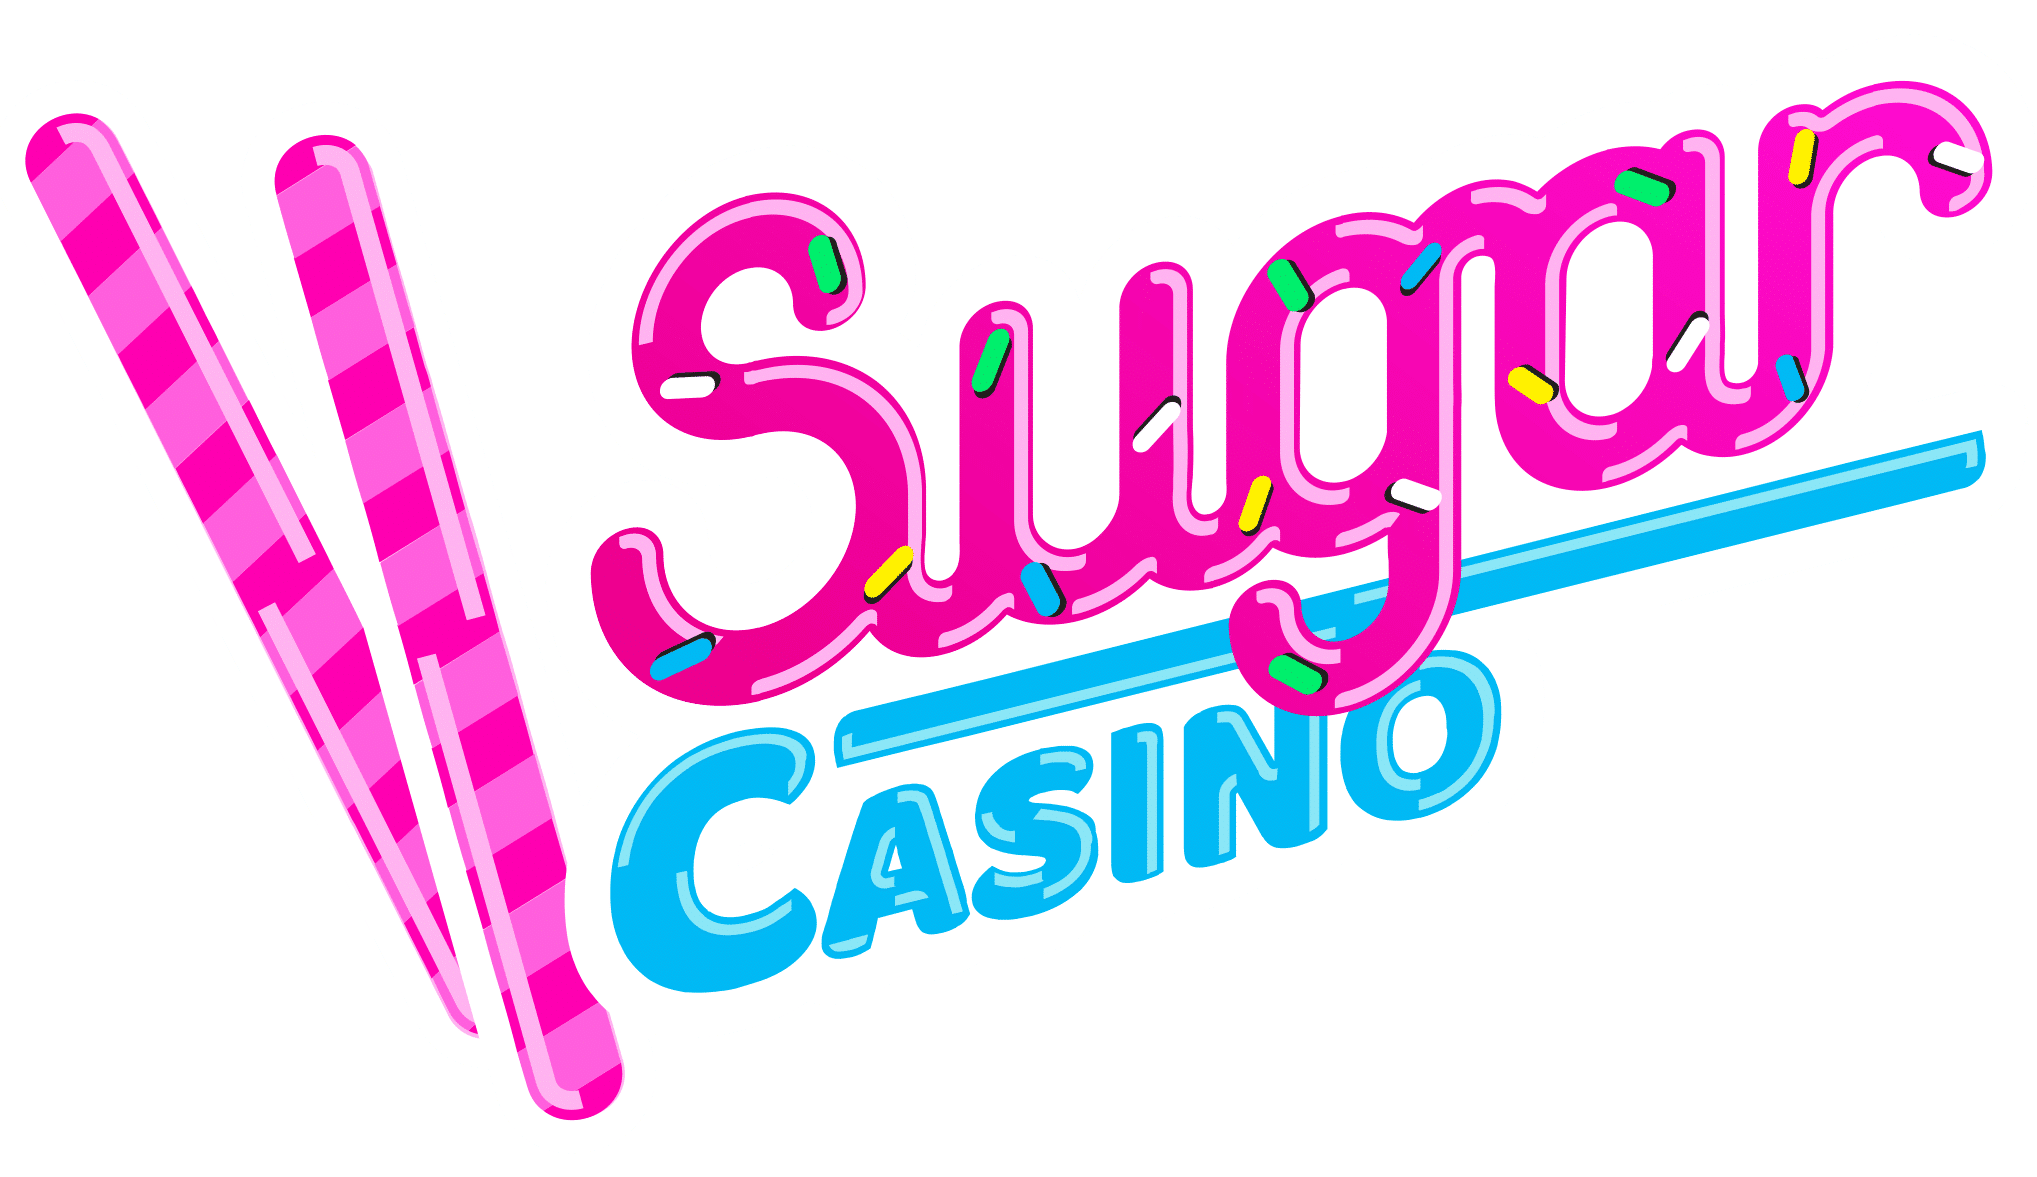 Casino logga - 83649